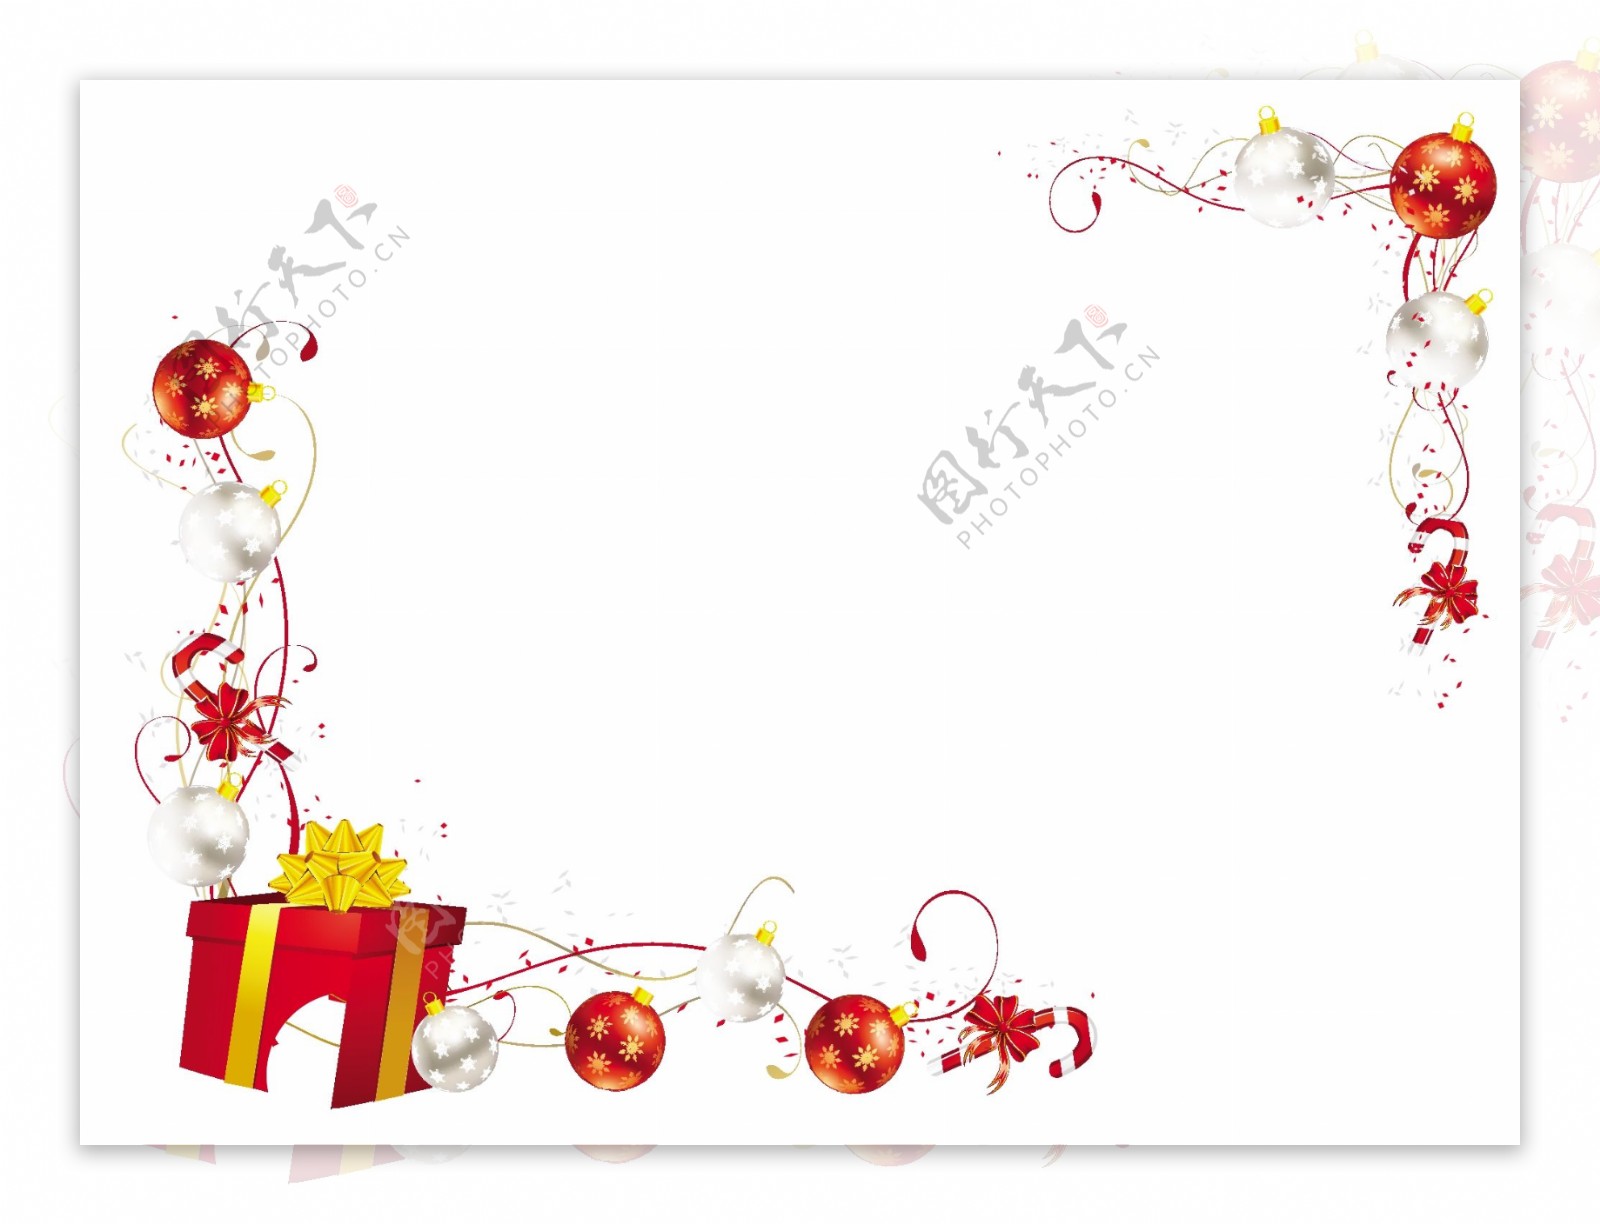 红白色的圣诞礼物糖果手杖棍子横框